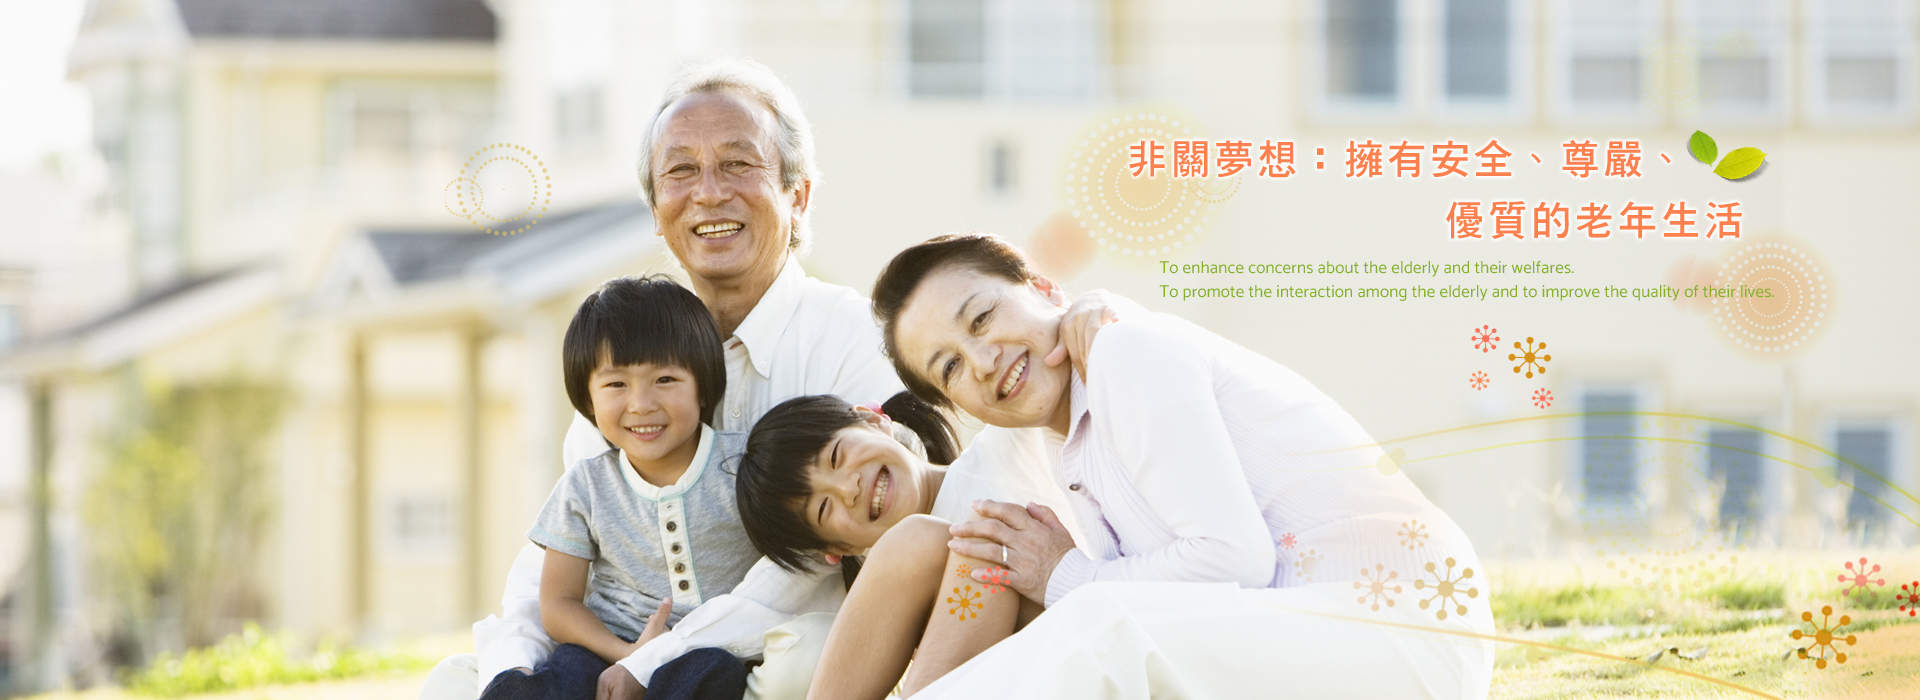 社團法人中華民國老人福祉協會